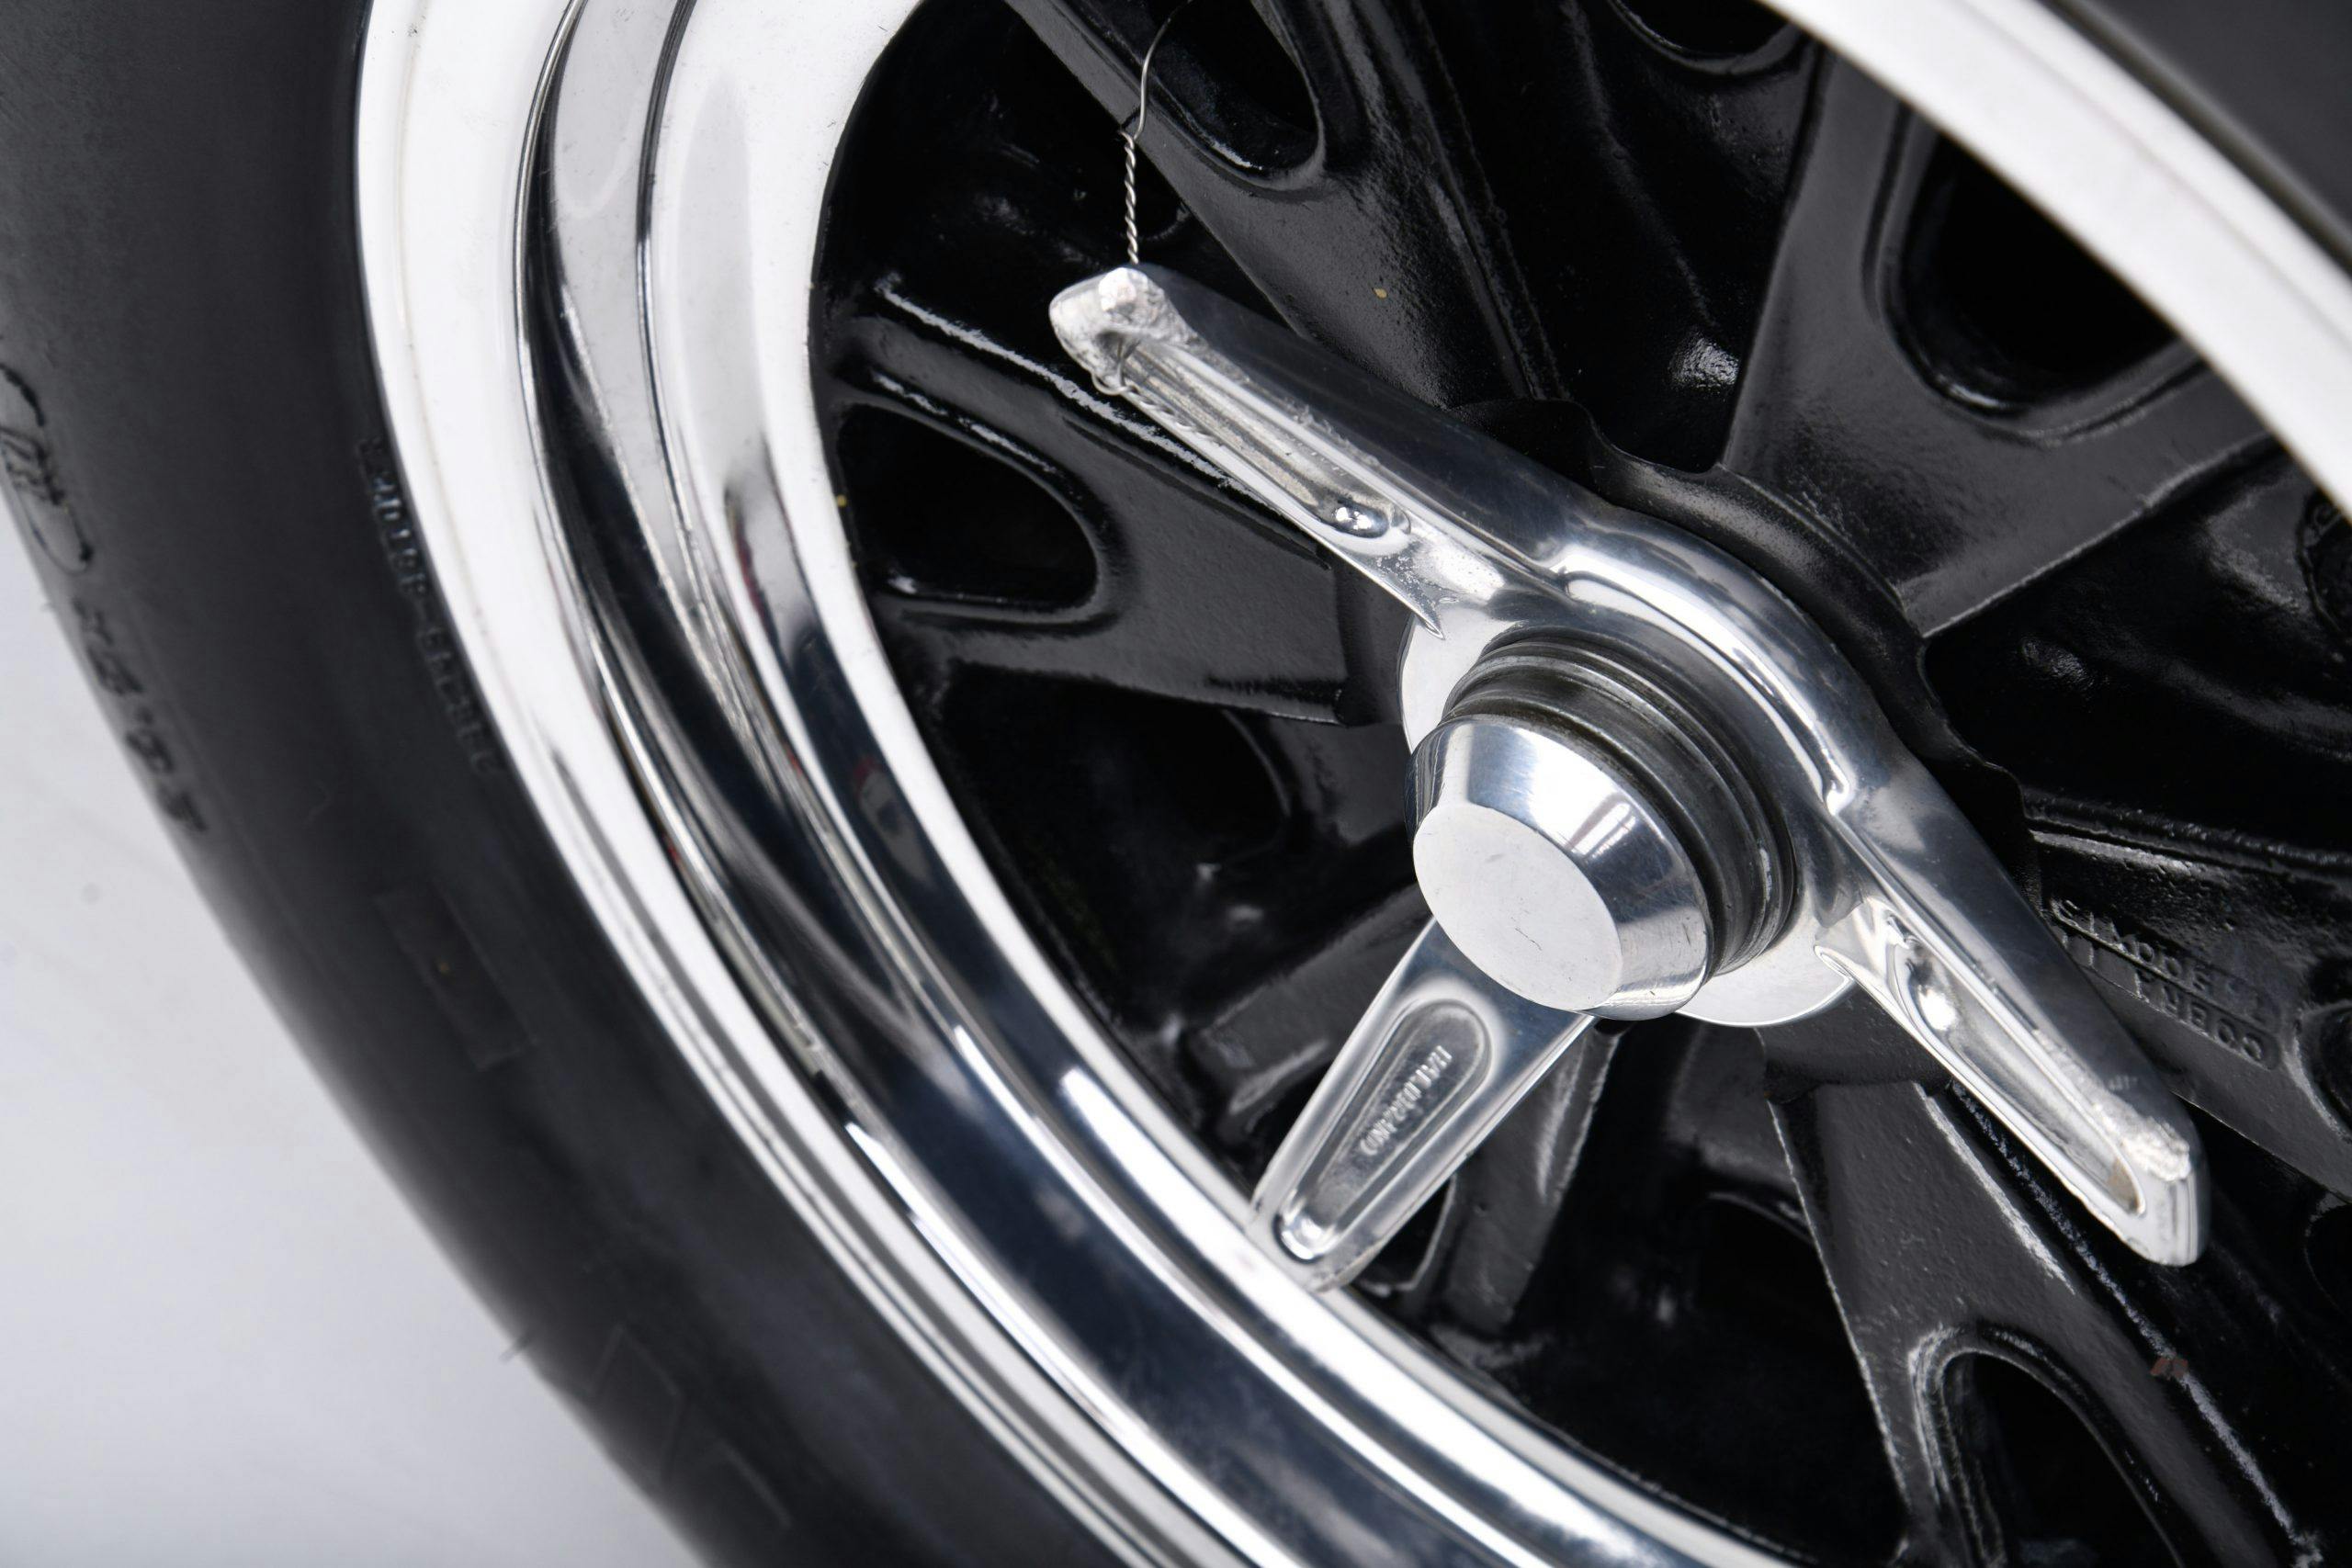 CSX 3015 Shelby Cobra wheel hub detail